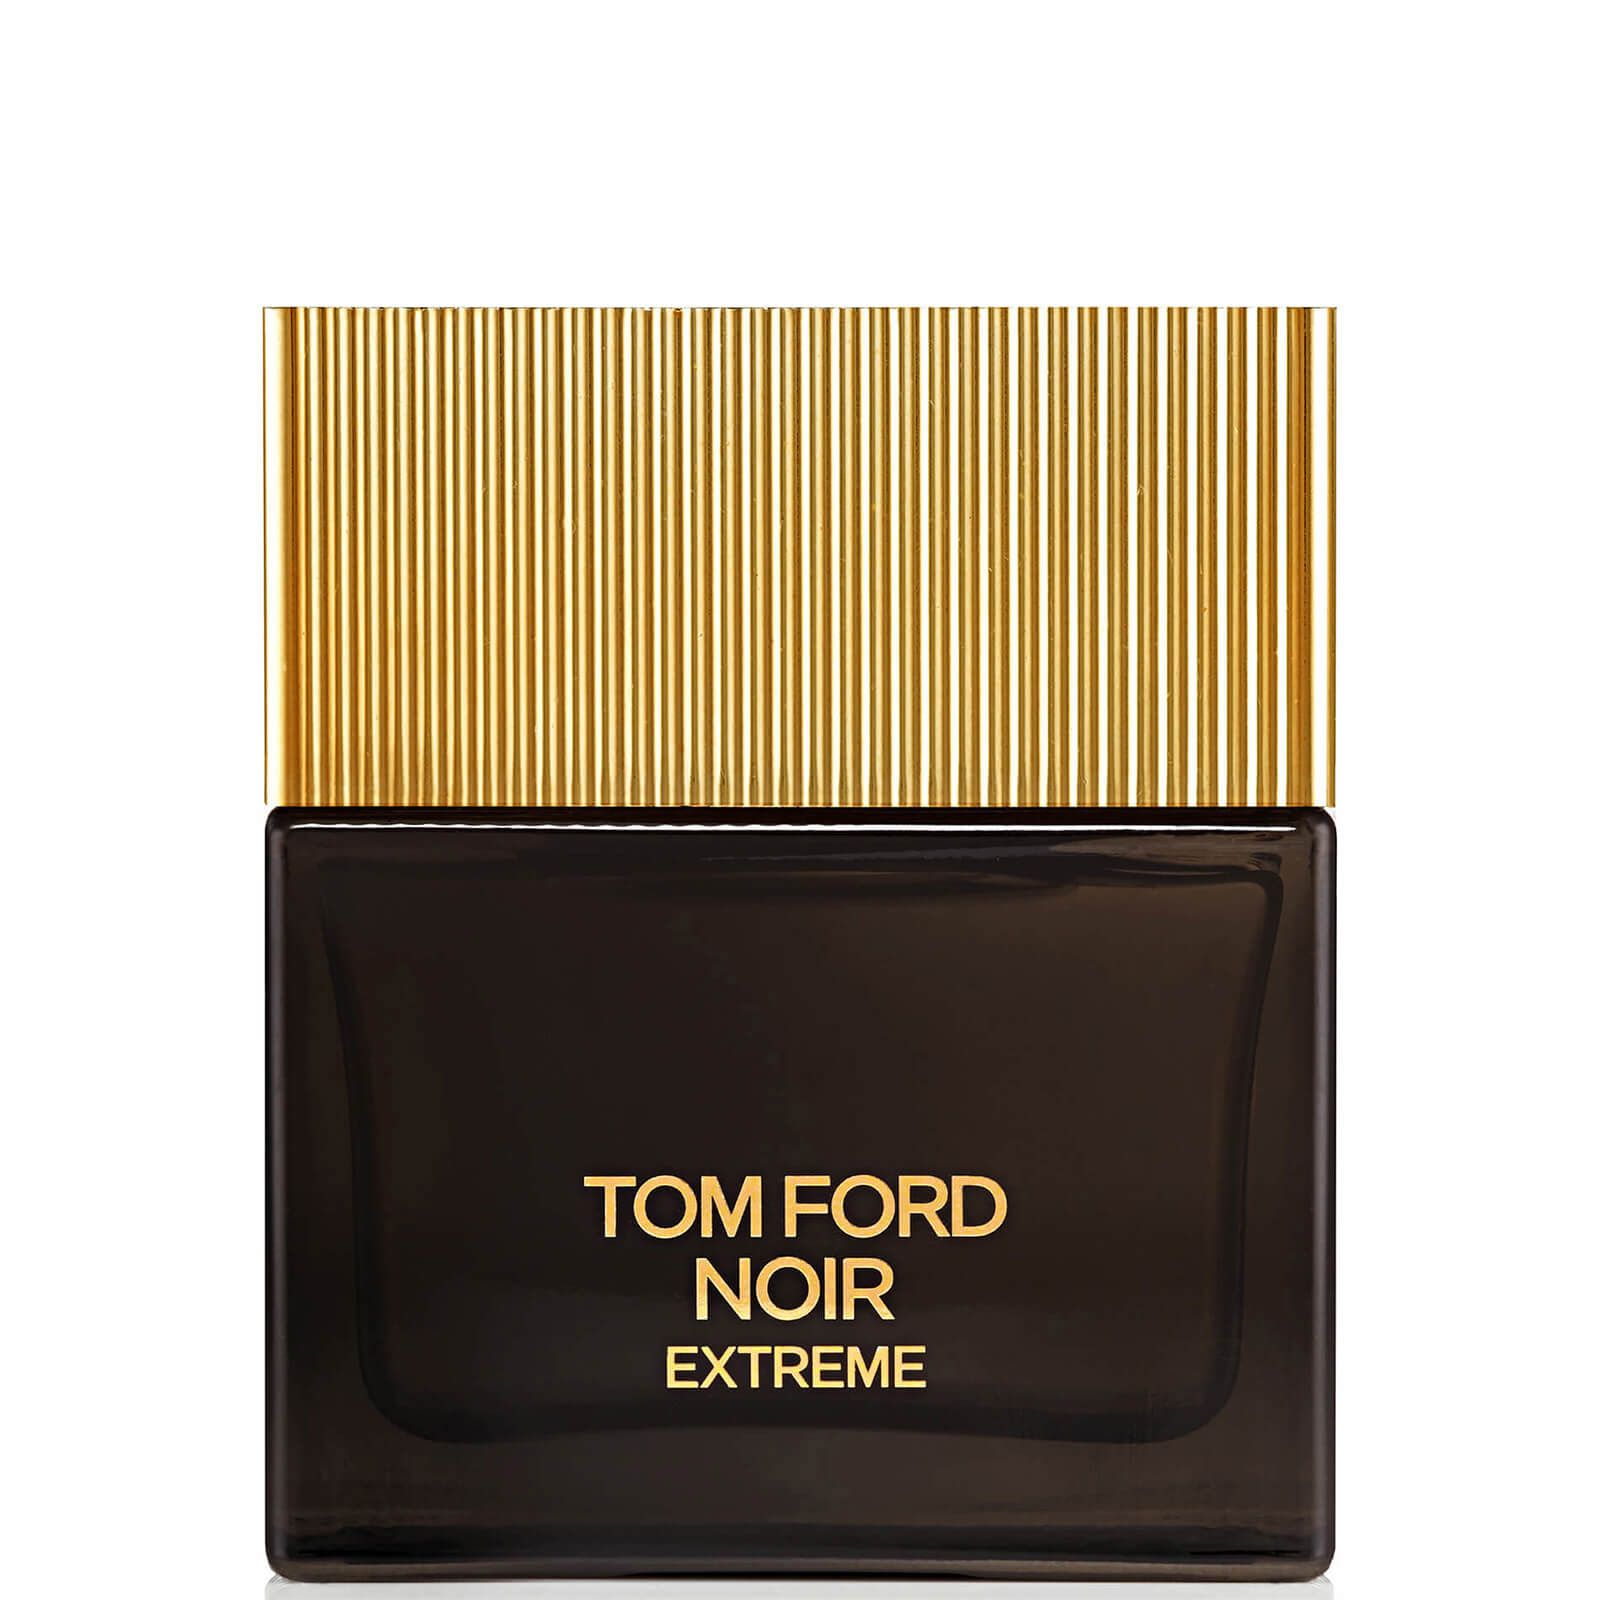 Том форд золотые духи. Tom Ford Noir extreme 100ml. Tom Ford Noir extreme Parfum. Духи Tom Ford Noir extreme. Tom Ford Noir extreme 100.